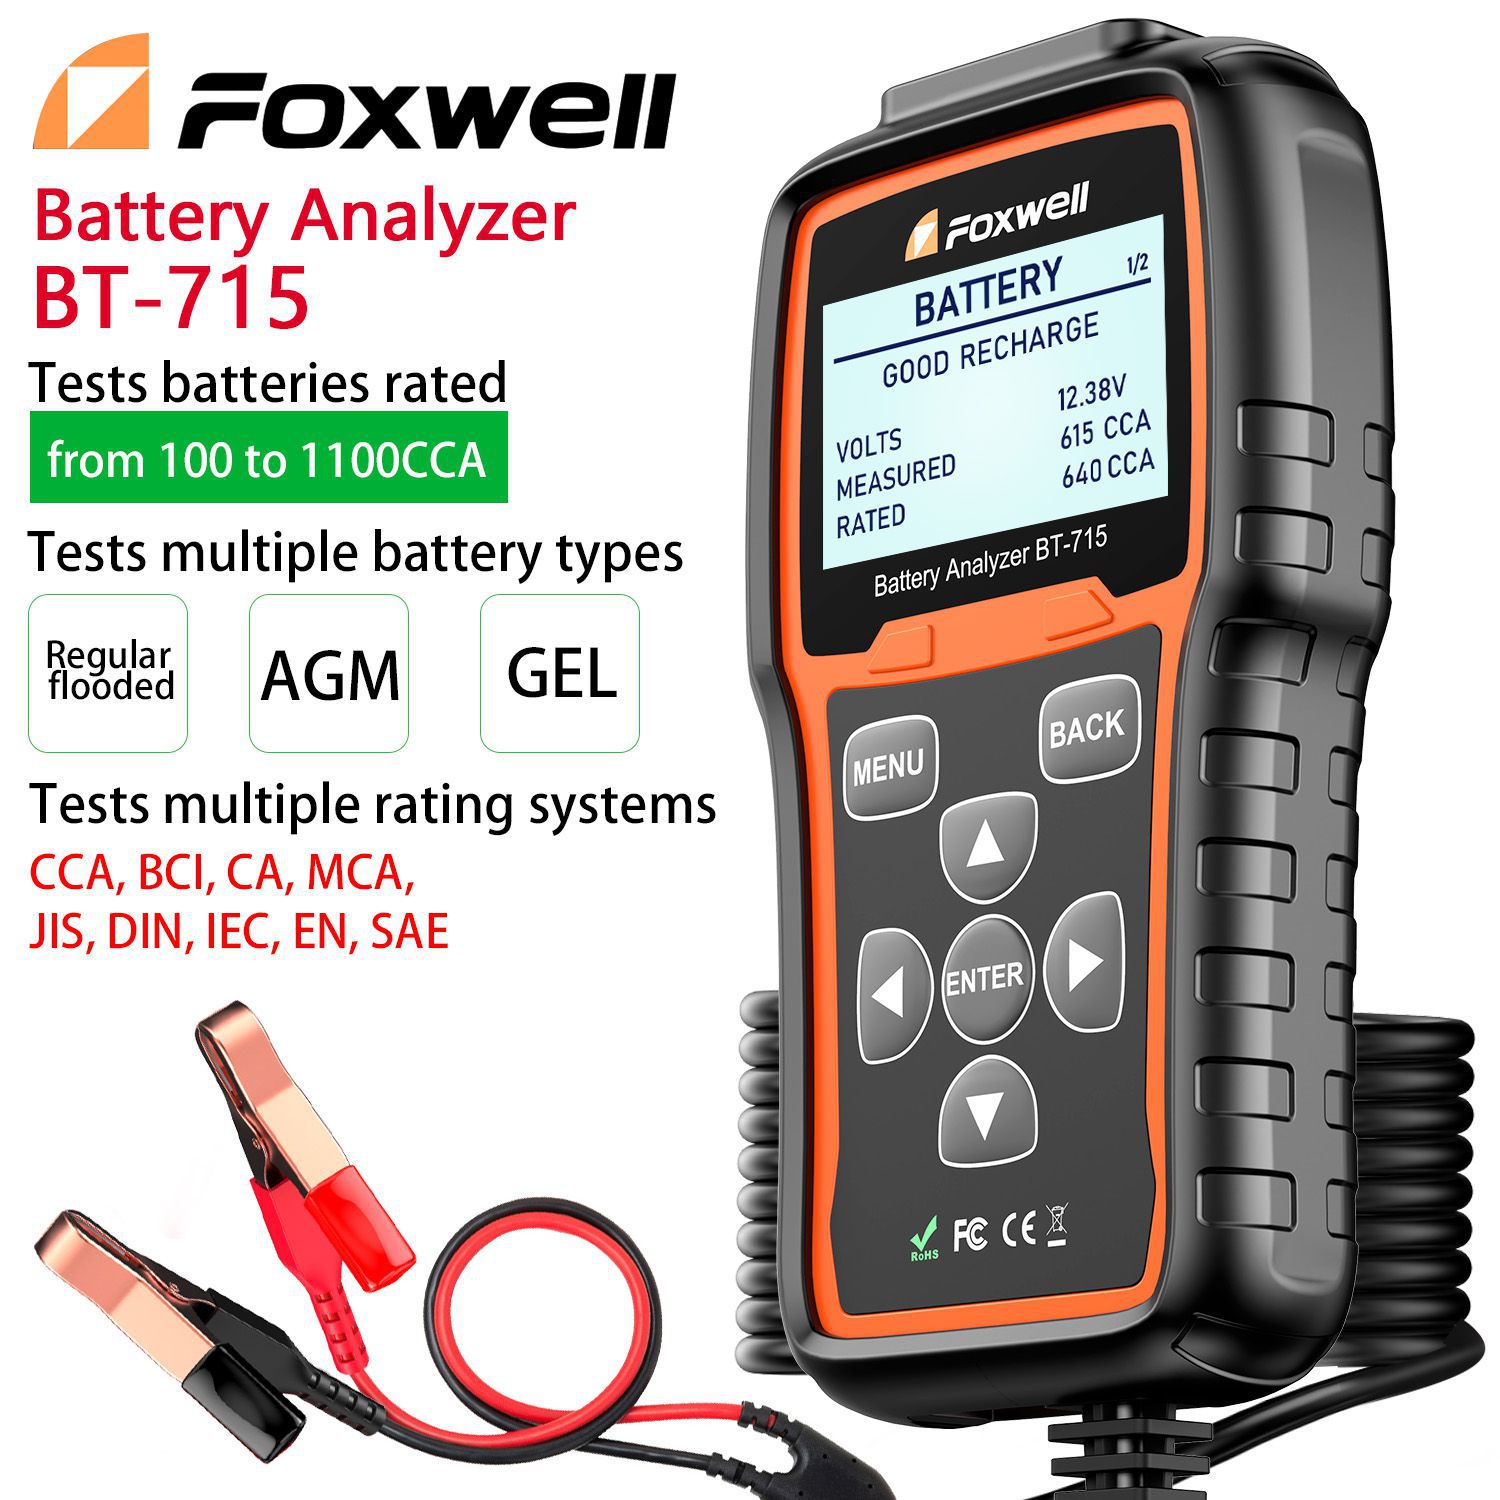 Foxwell BT-715 Battery Analyzer Support Multi-Language Ersatz Foxwell BT-705